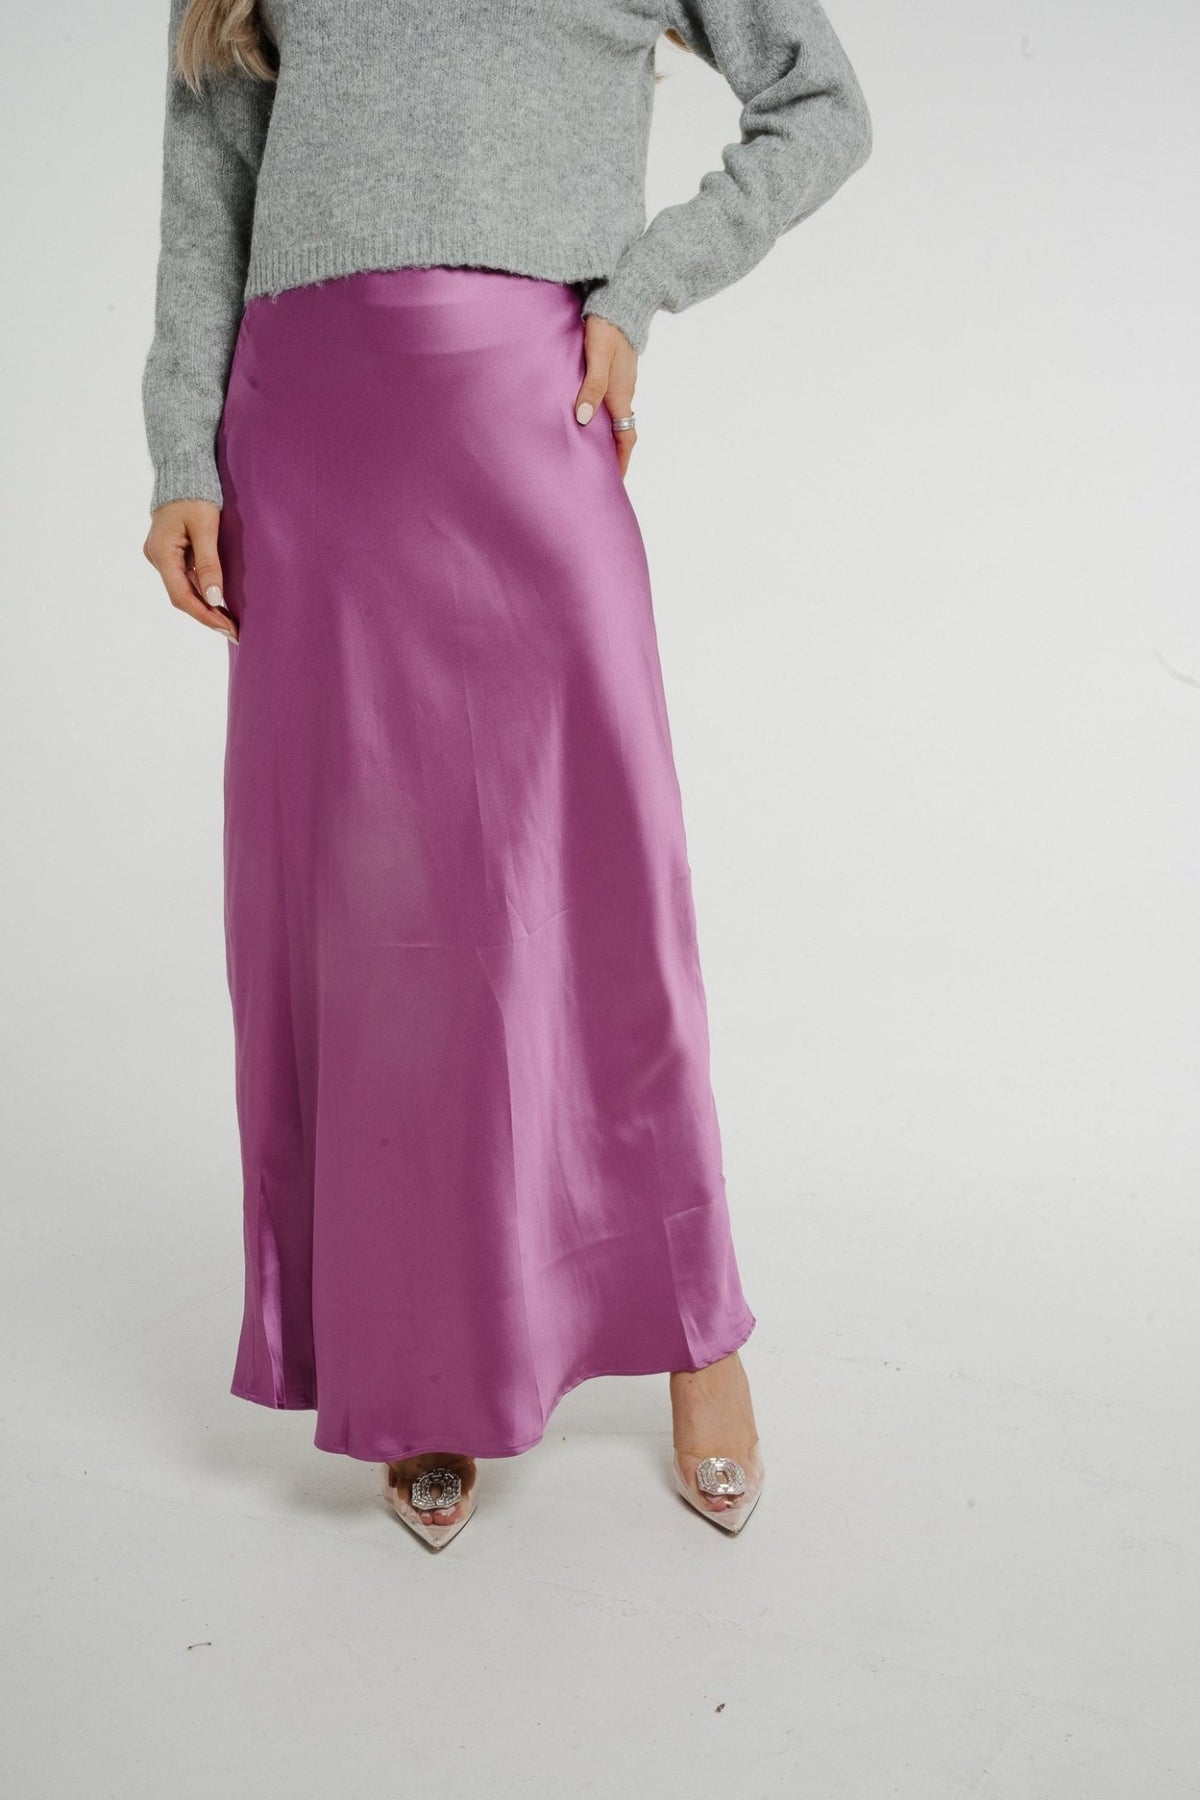 Elsa Longline Satin Skirt In Purple - The Walk in Wardrobe